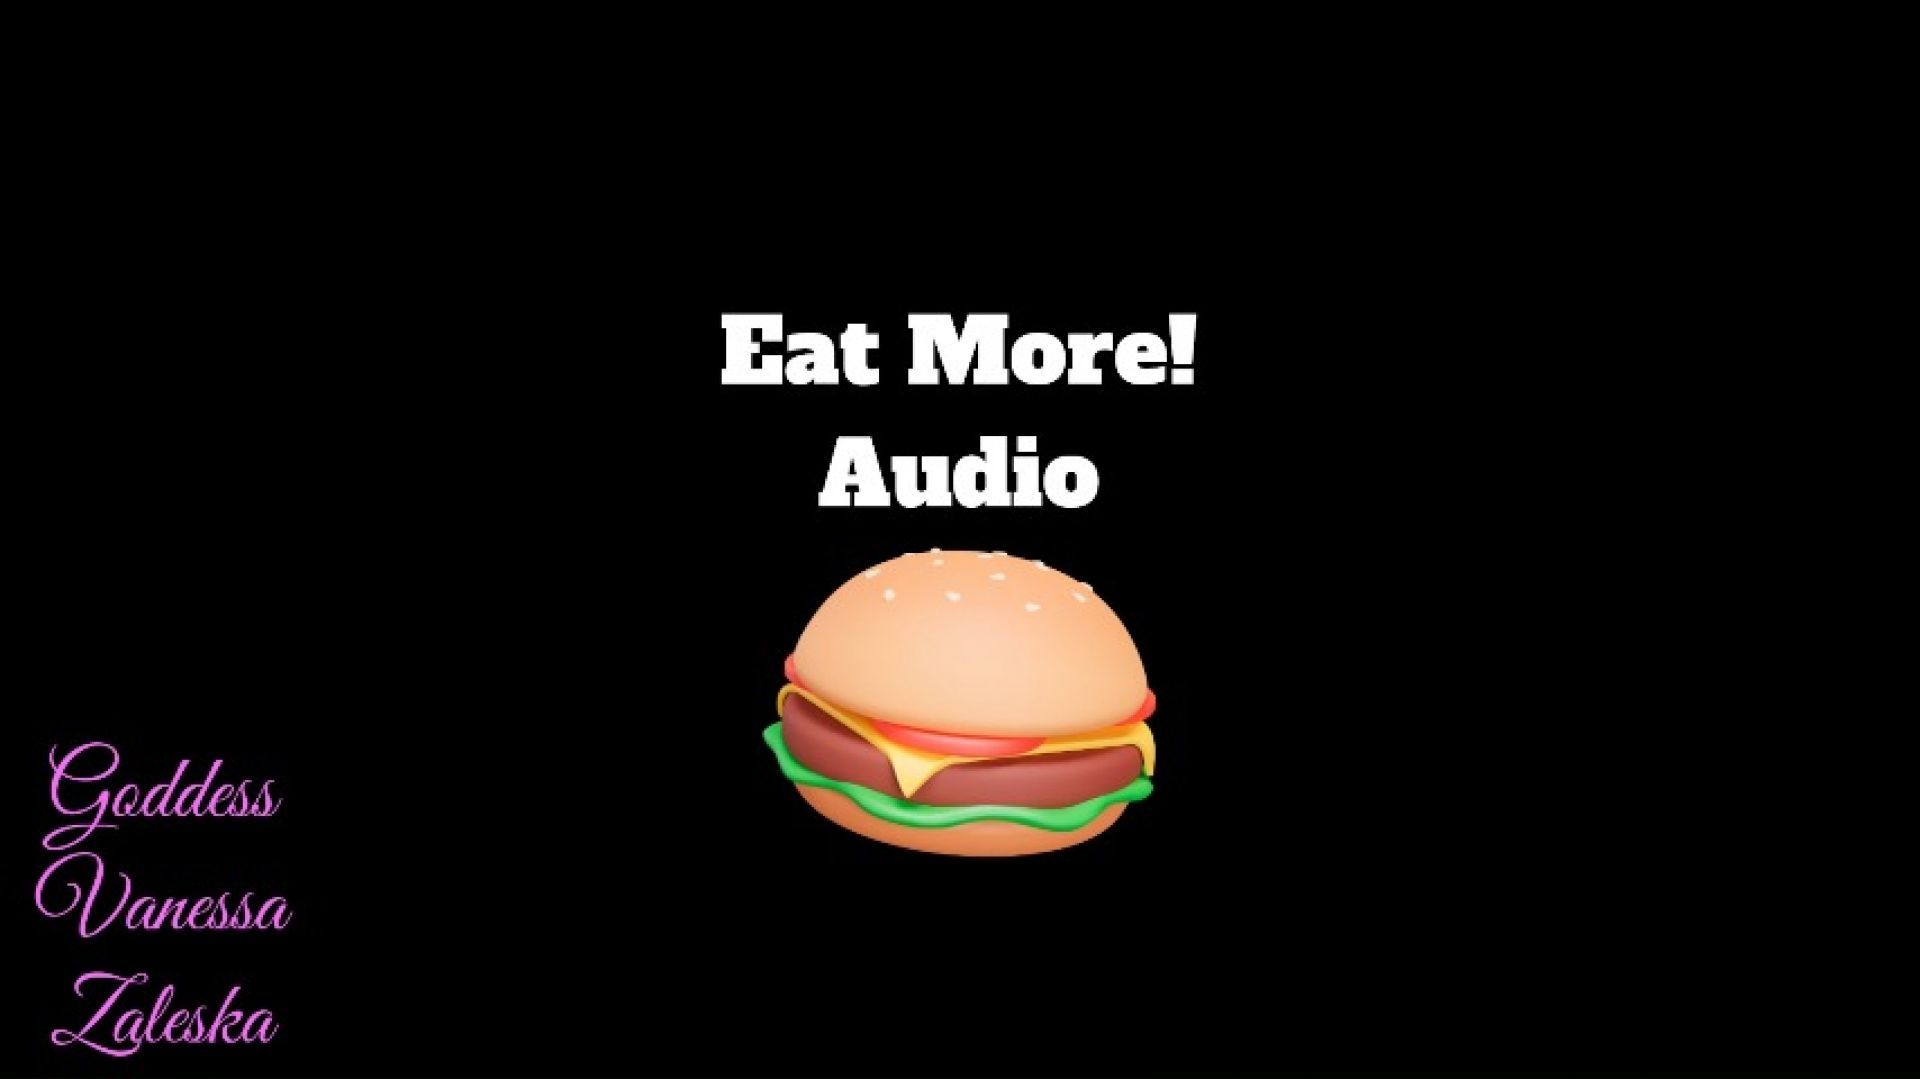 Eat More, Gain More! Audio